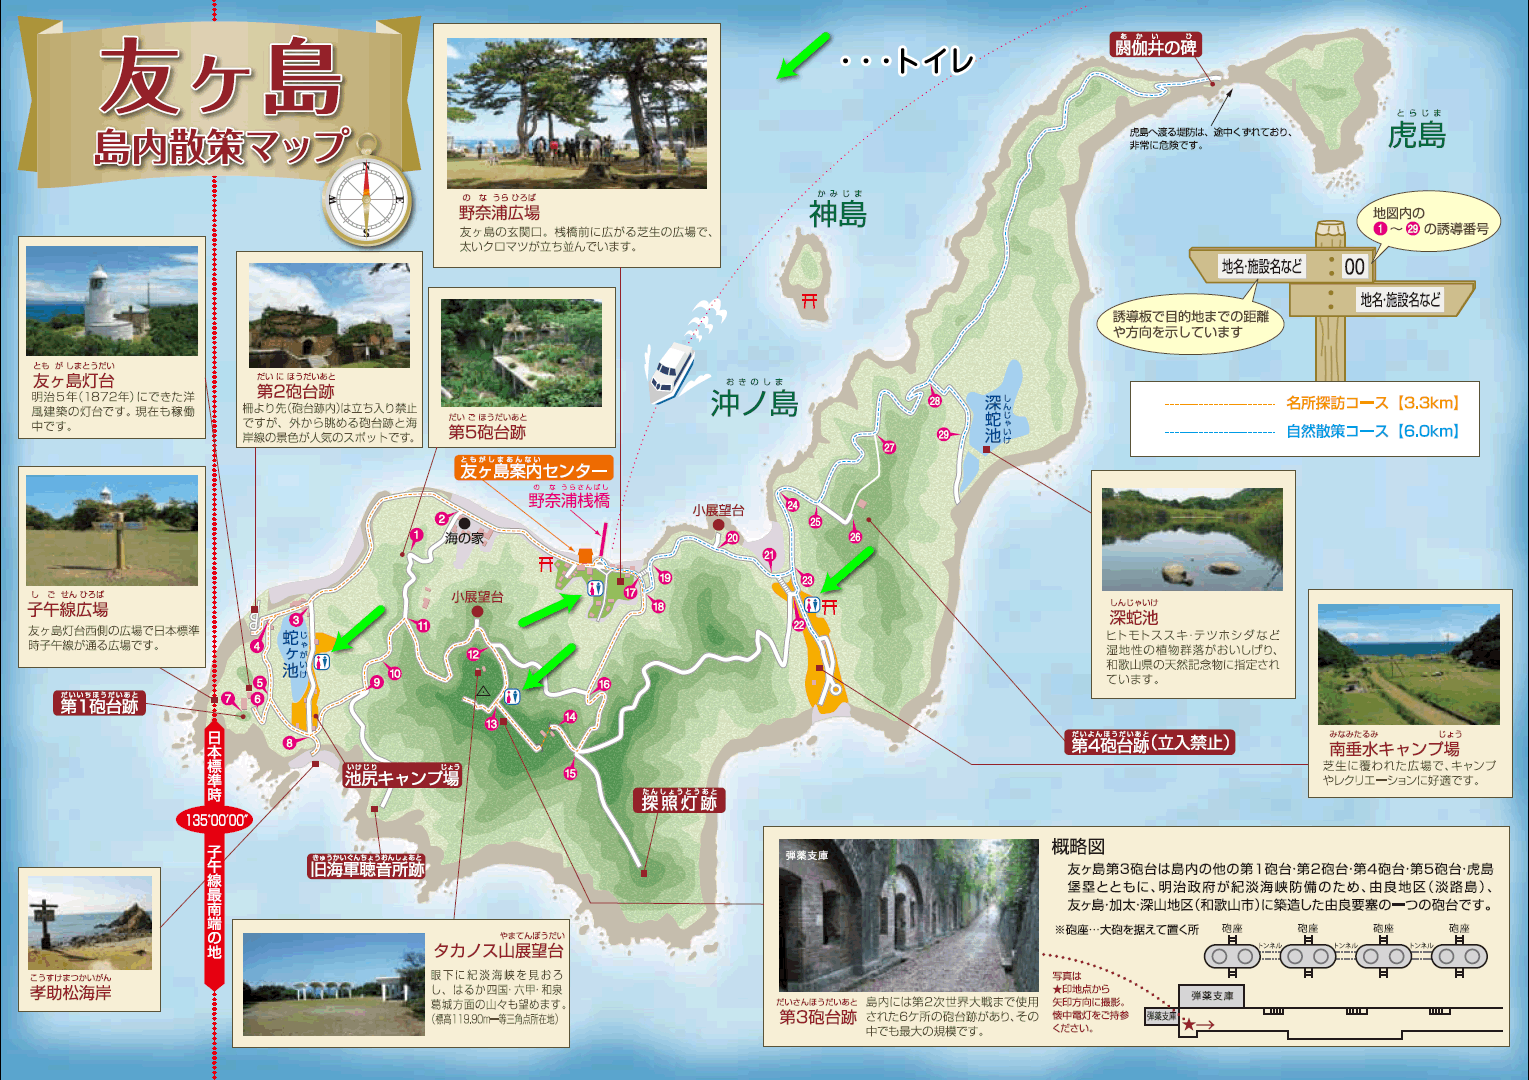 友ヶ島 島内散策マップ